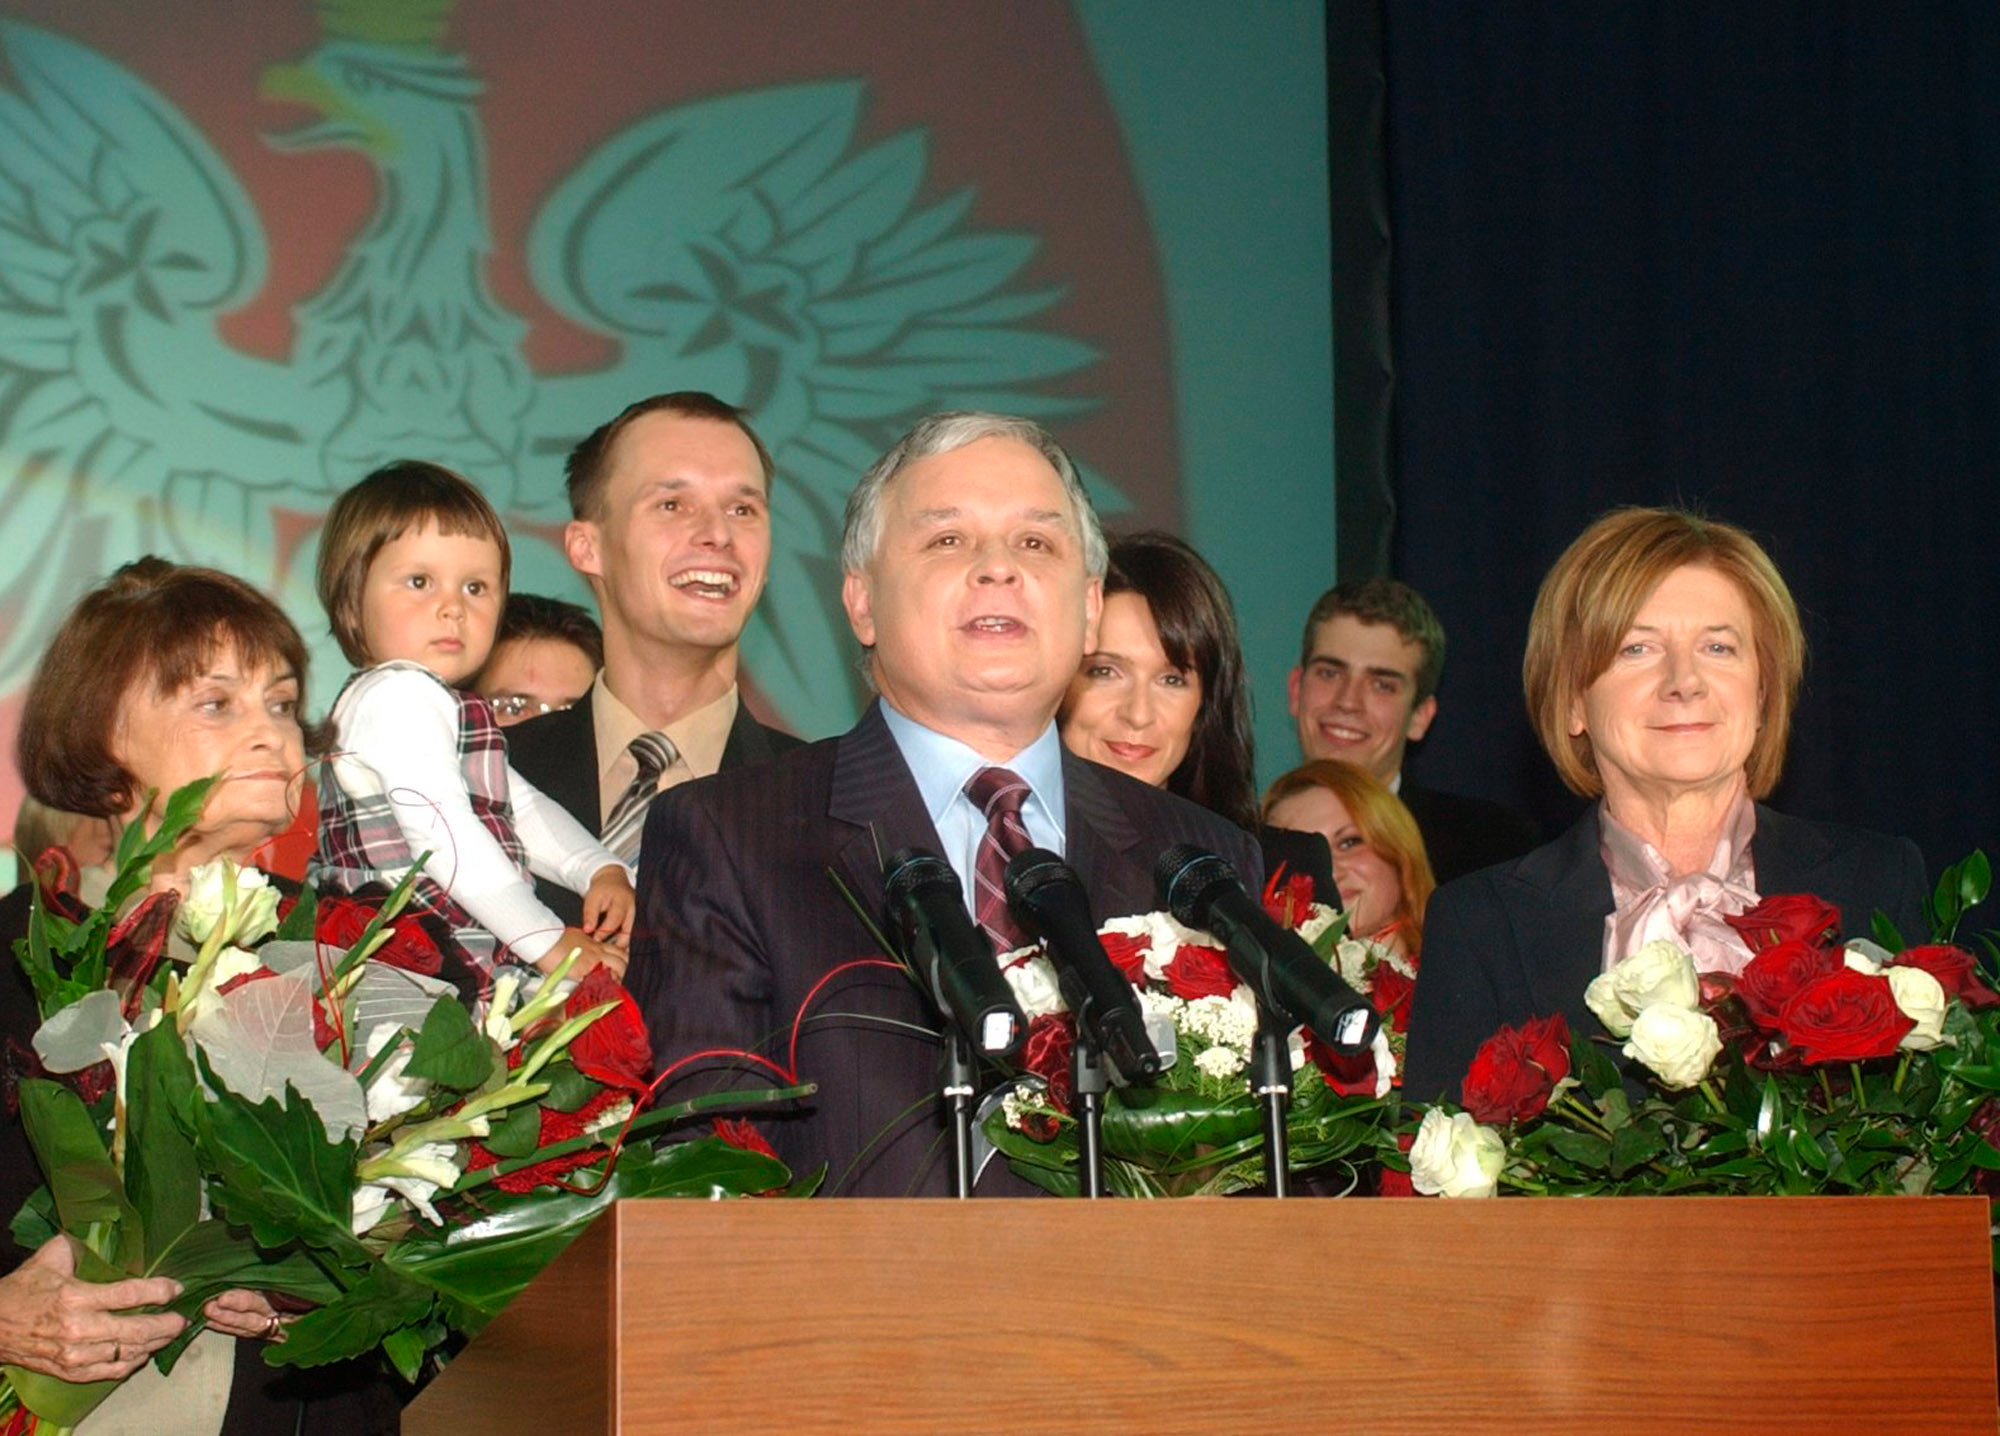 Lech Kaczynski omkom under lördagen i en flygkrasch.